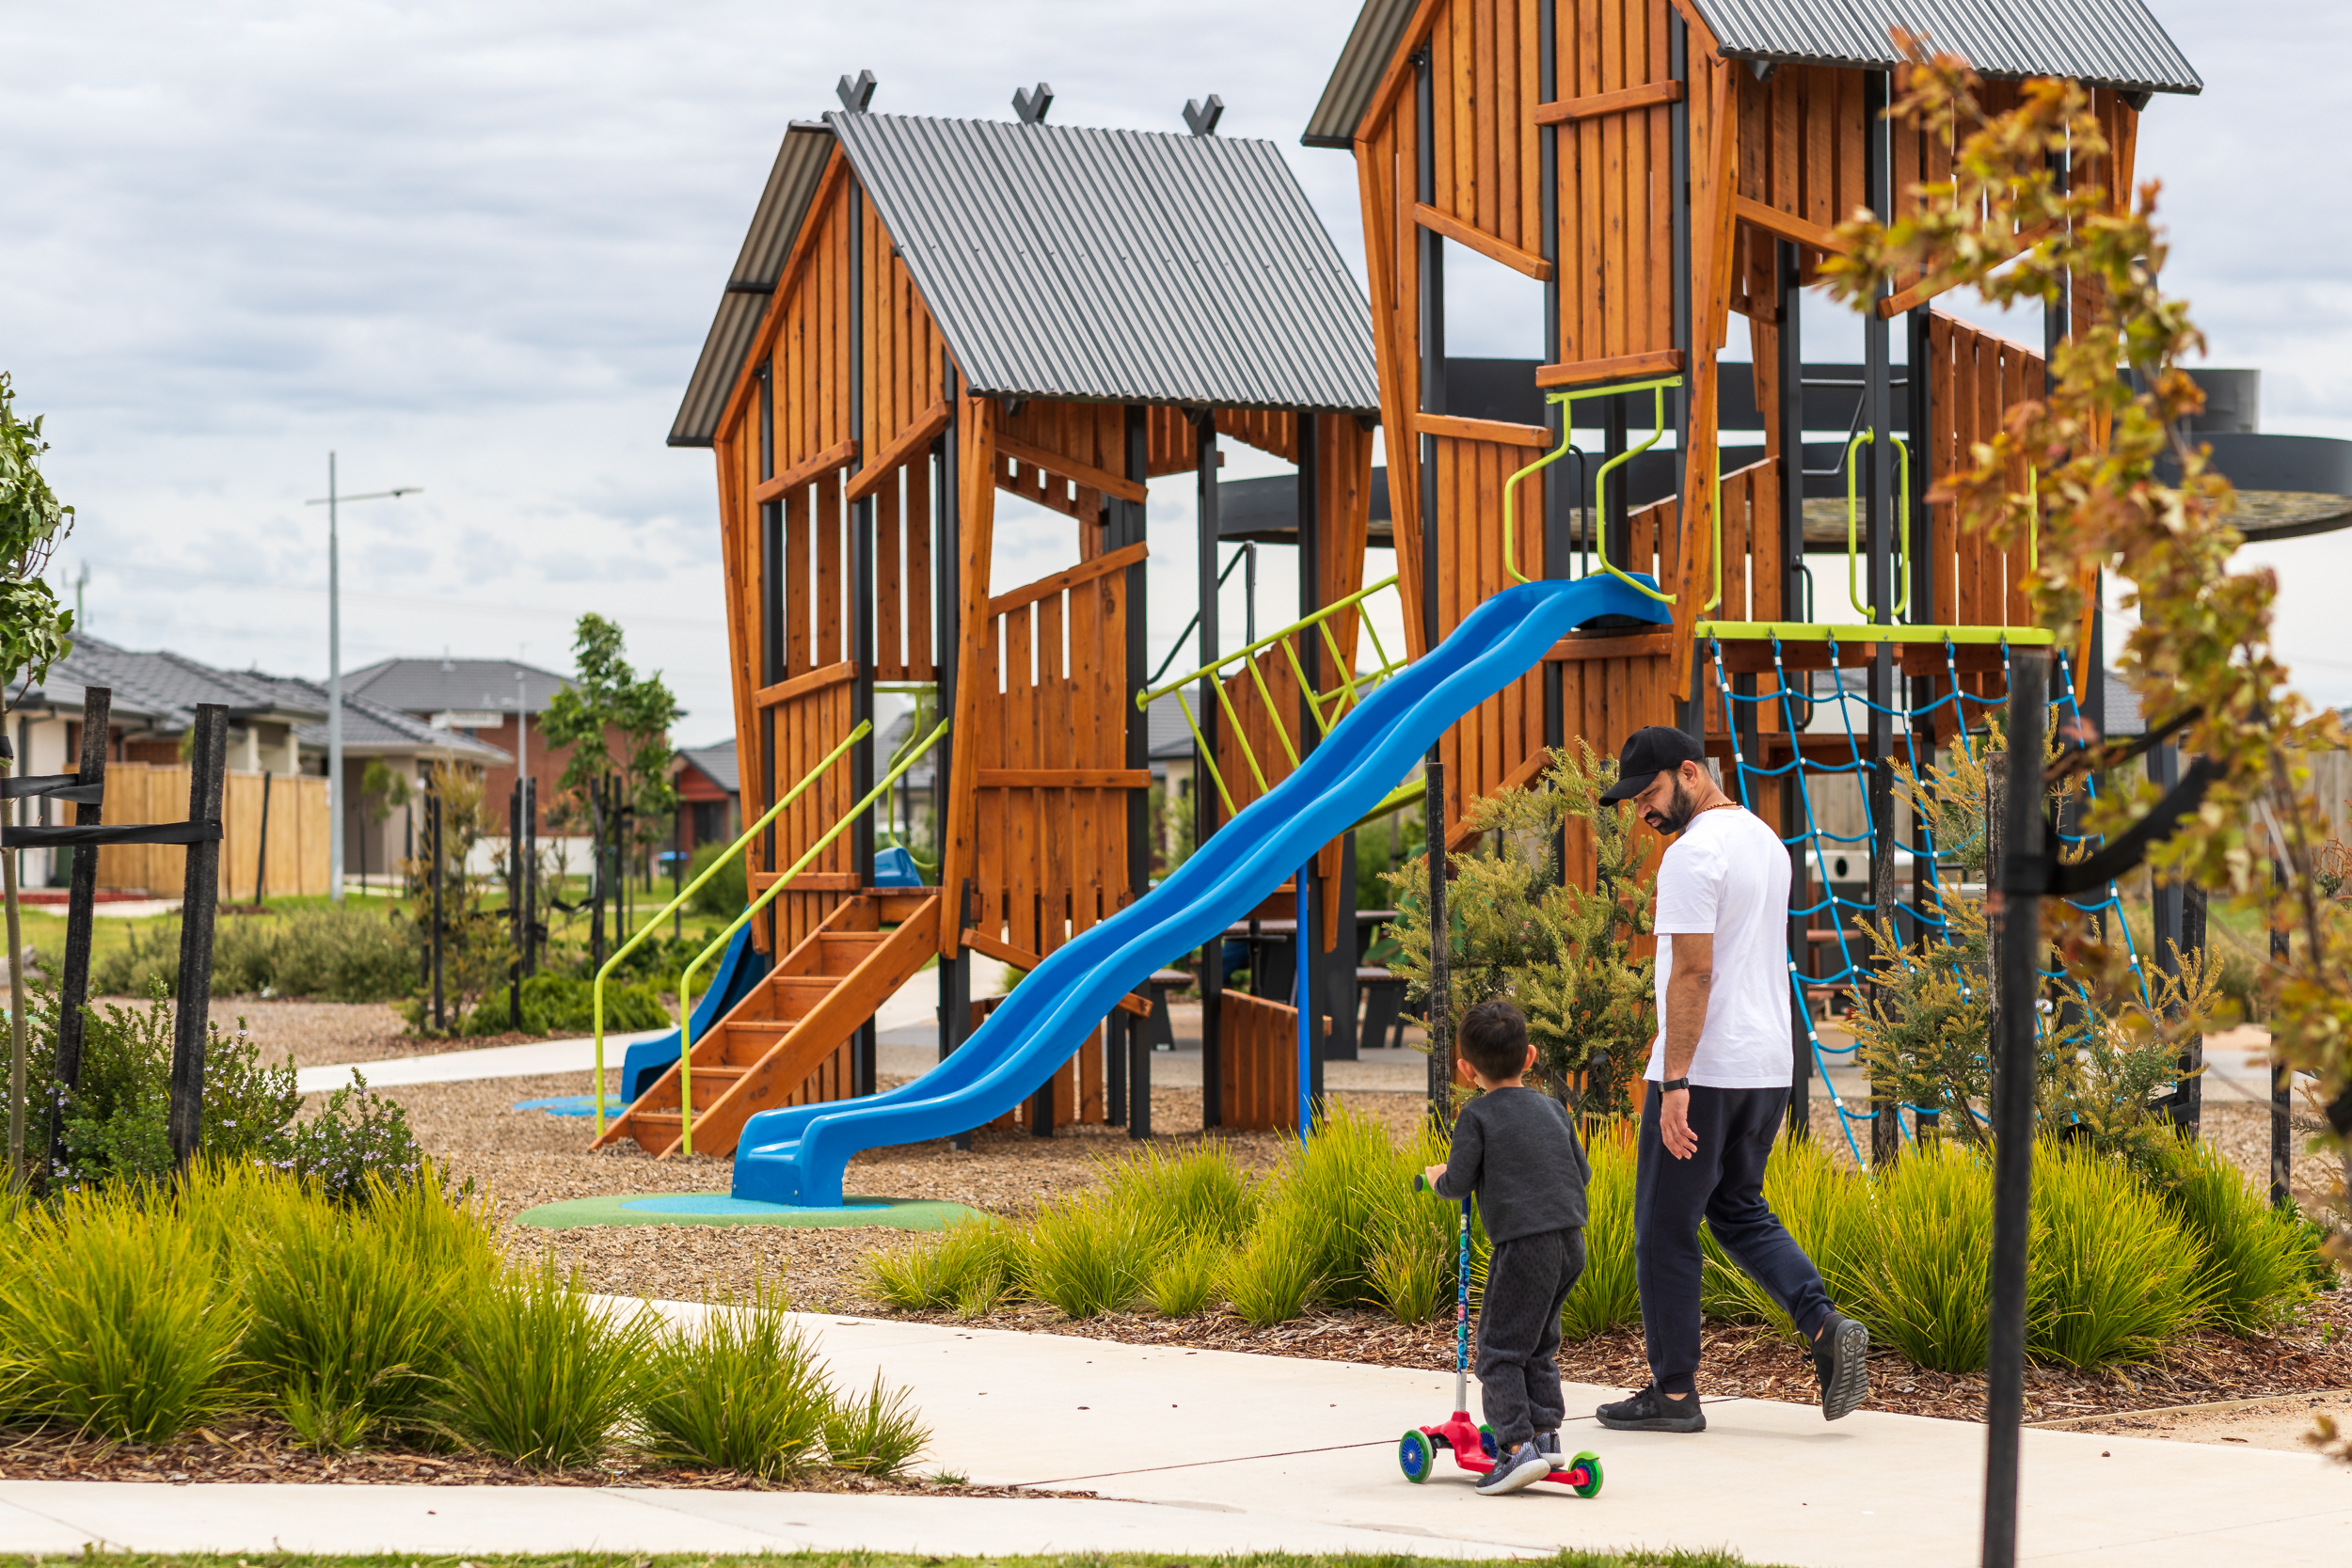 Tarneit West Community Centre Playground